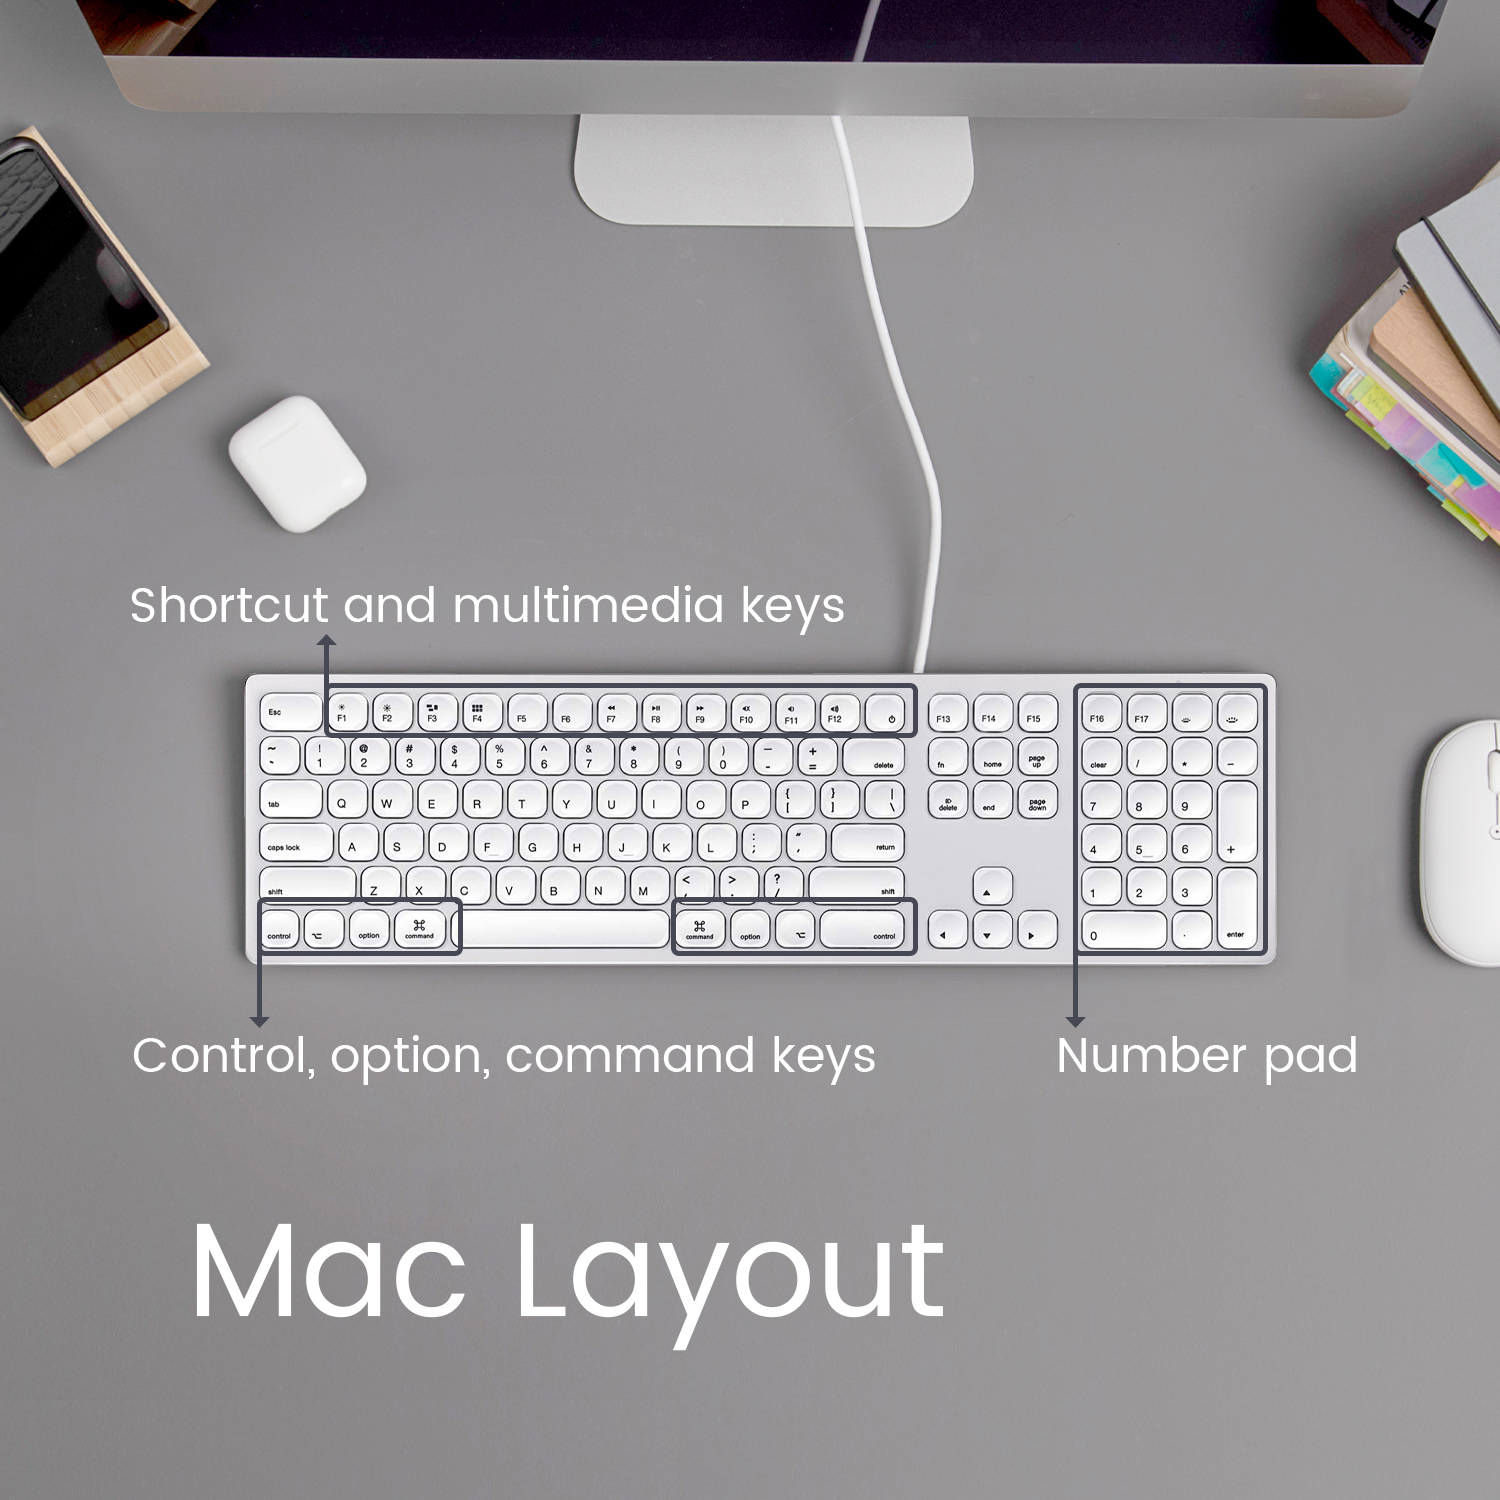 Intuitive Mac shortcuts